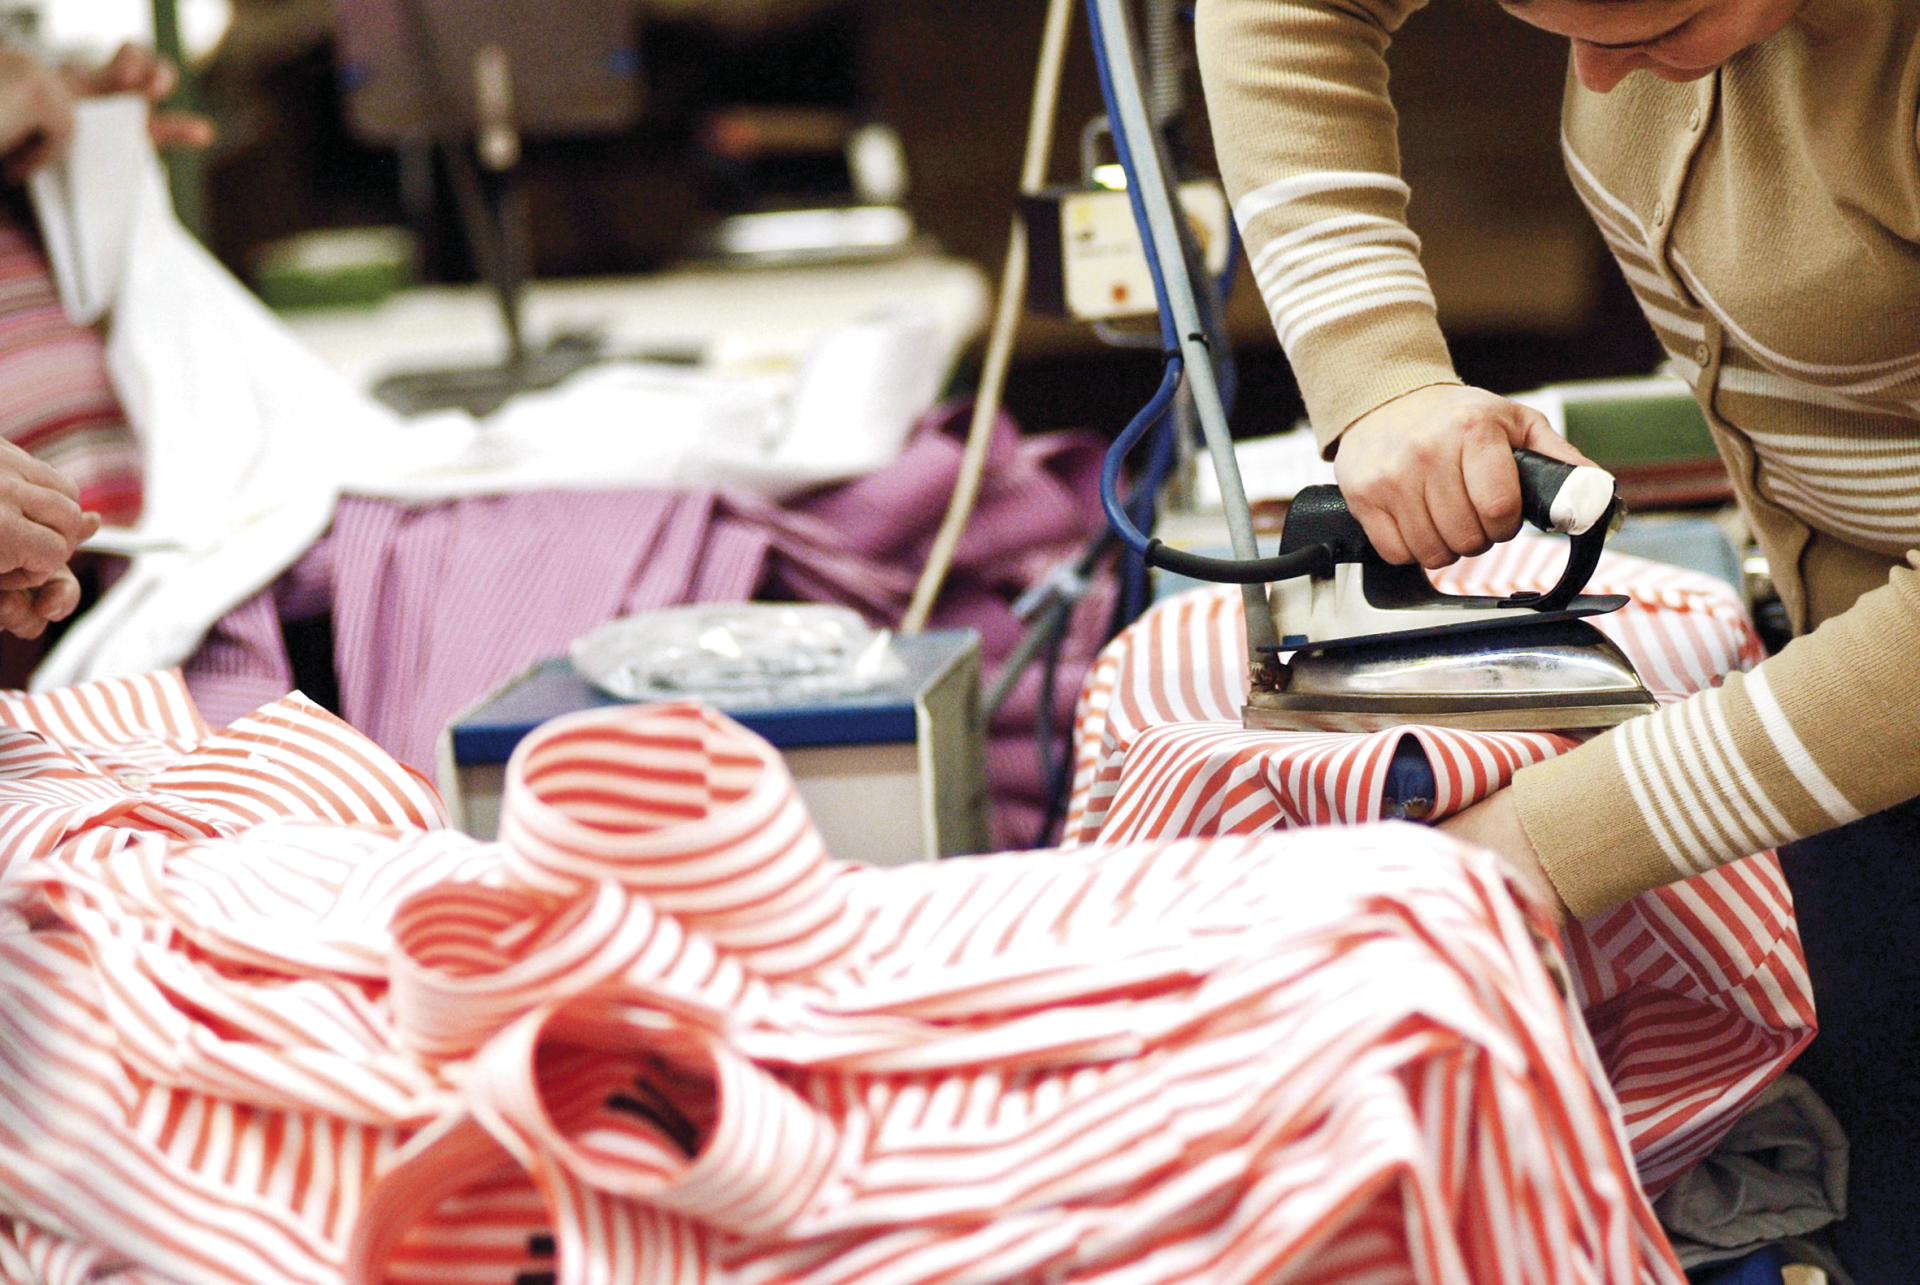 Têxtil e vestuário. Portugal já exportou 3191 milhões em bens este ano